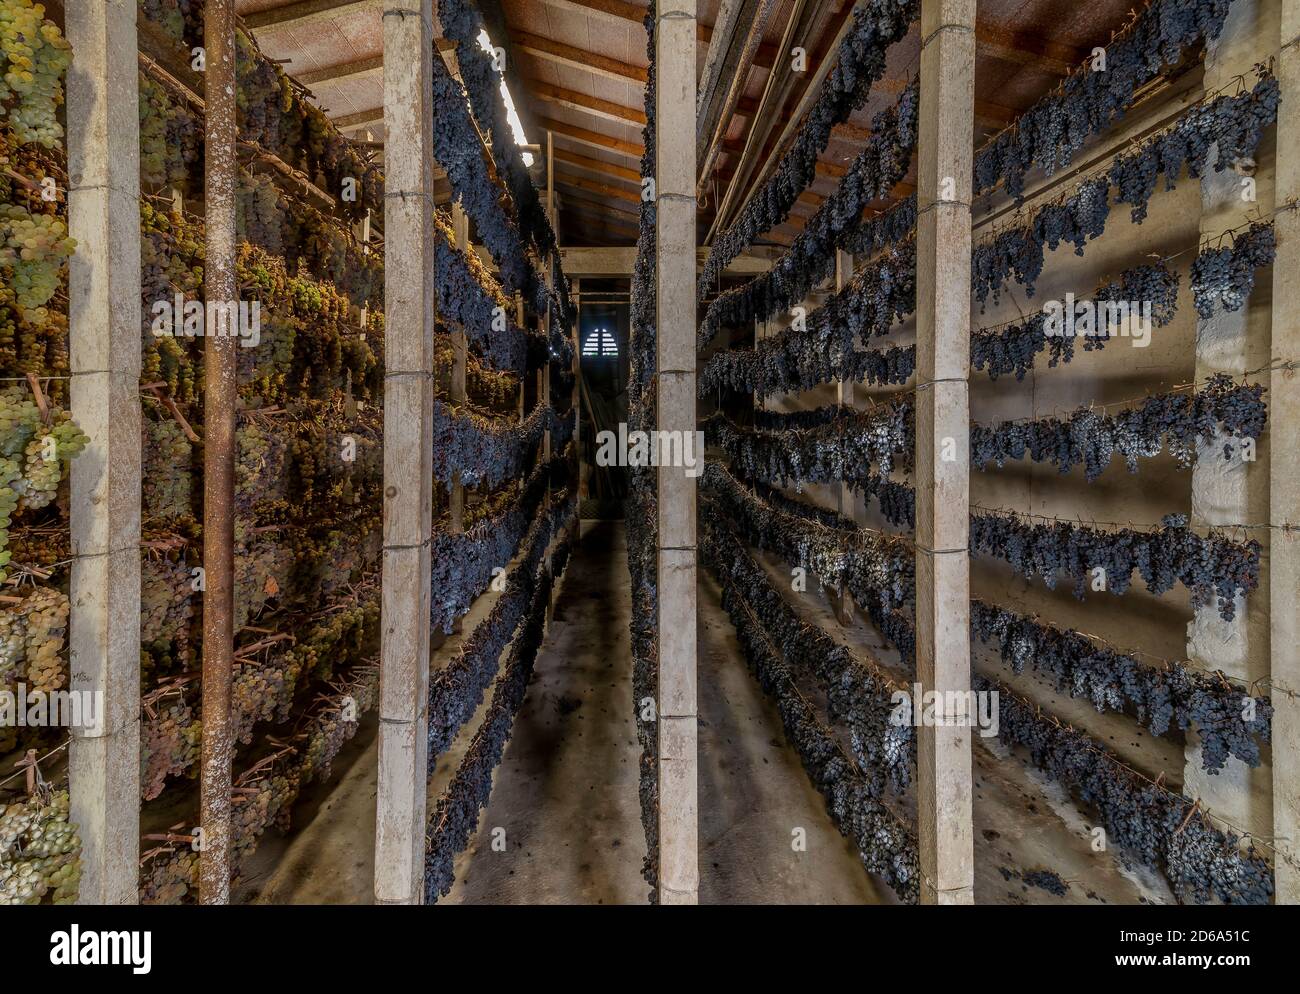 Grappoli di uve bianche e nere sono appesi in varie file ad appassire, per la produzione del famoso vin santo, Toscana, Italia Foto Stock